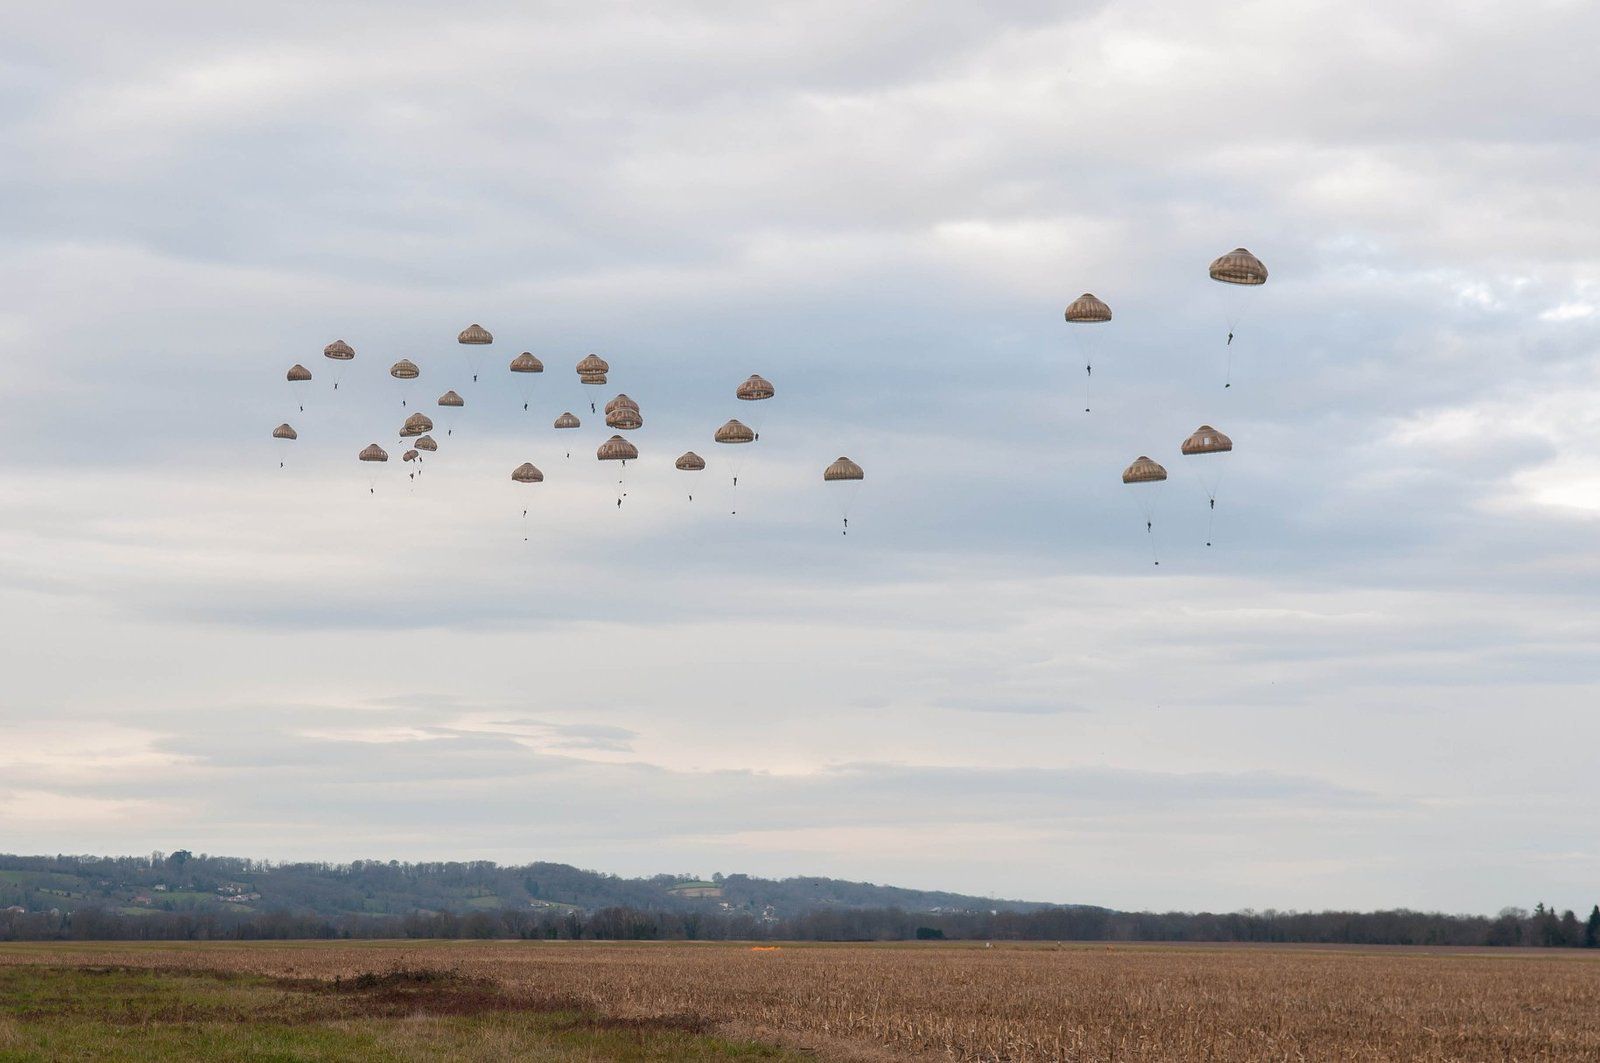 Félicitations aux nouveaux parachutistes du 1er régiment du train parachutiste. 👏